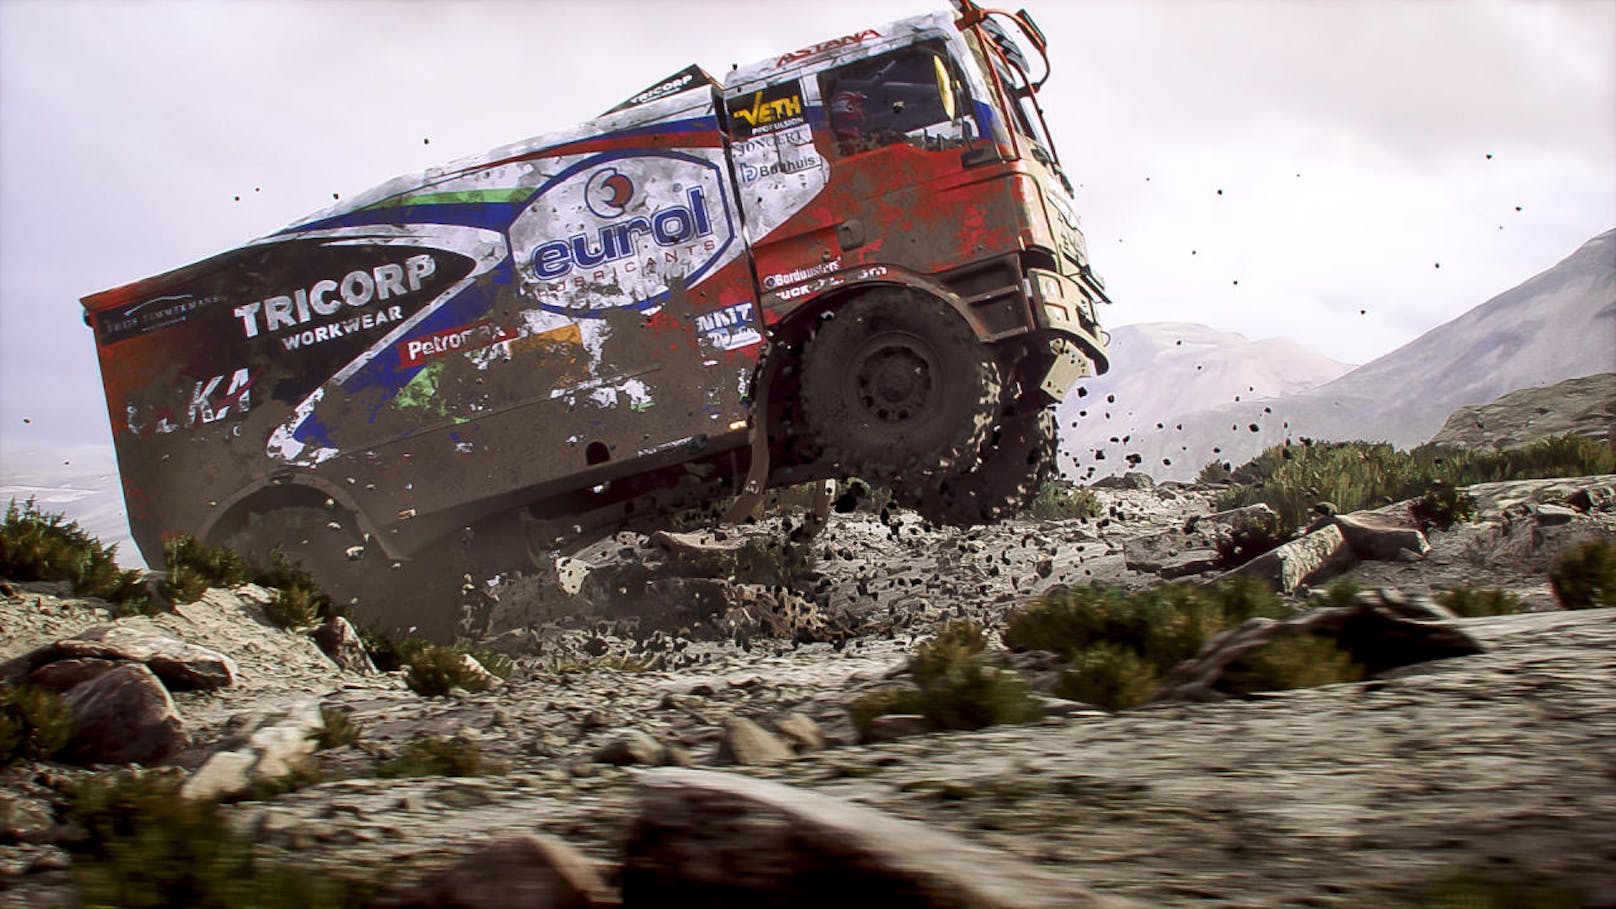 Die Rally Dakar bekommt ihr eigenes Videospiel. Bigmoon Entertainment und Deep Silver/Koch Media wollen den Titel noch 2018 für PlayStation 4, Xbox One und PC veröffentlichen. "Dakar 18 legt den Fokus auf Realismus und Simulation der Herausforderungen, denen die Fahrer der Rally Dakar gegenüber stehen. Eine detailgenaue Darstellung der Fahrzeuge, Piloten und der Umgebung, mit direktem Einfluss auf das Fahrverhalten sind die Kern-Features der Off- und Online-Erfahrung in Dakar 18", heißt es von den Machern.